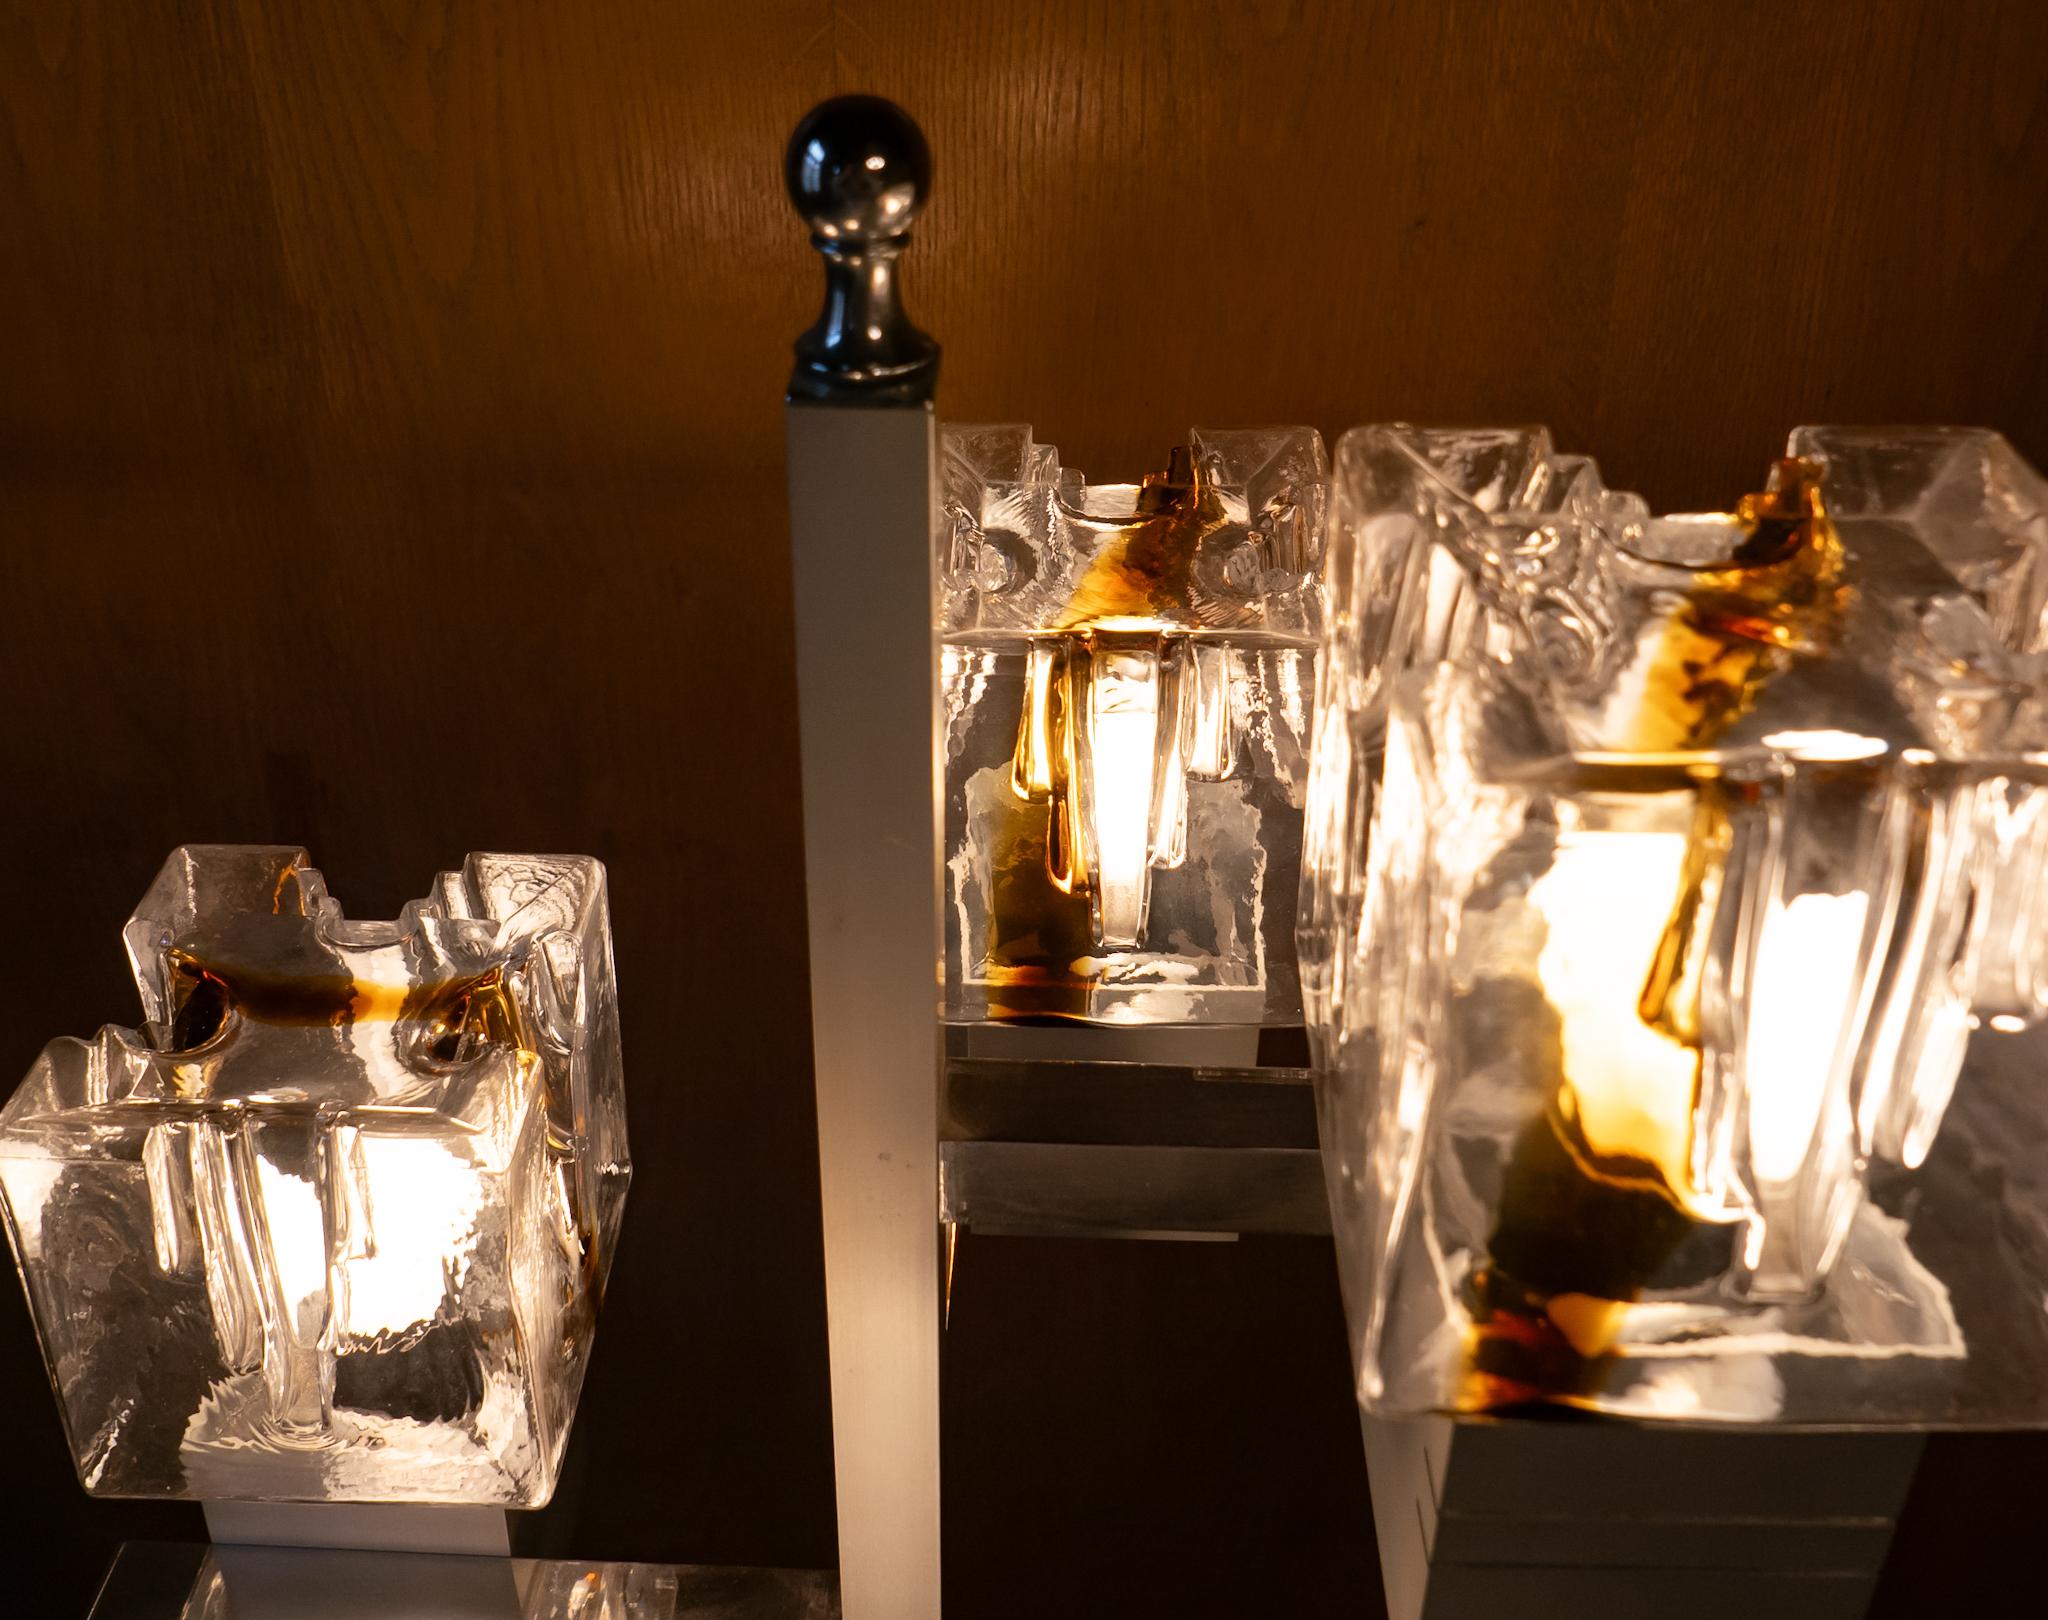 Moderne Murano-Glas-Chrom-Stehlampe aus der Jahrhundertmitte von T. Zuccheri, Italien 1970er Jahre.

Diese italienische Stehleuchte von Toni Zuccheri wurde in den 1970er Jahren von dem angesehenen italienischen Hersteller AV Mazzega mit viel Liebe